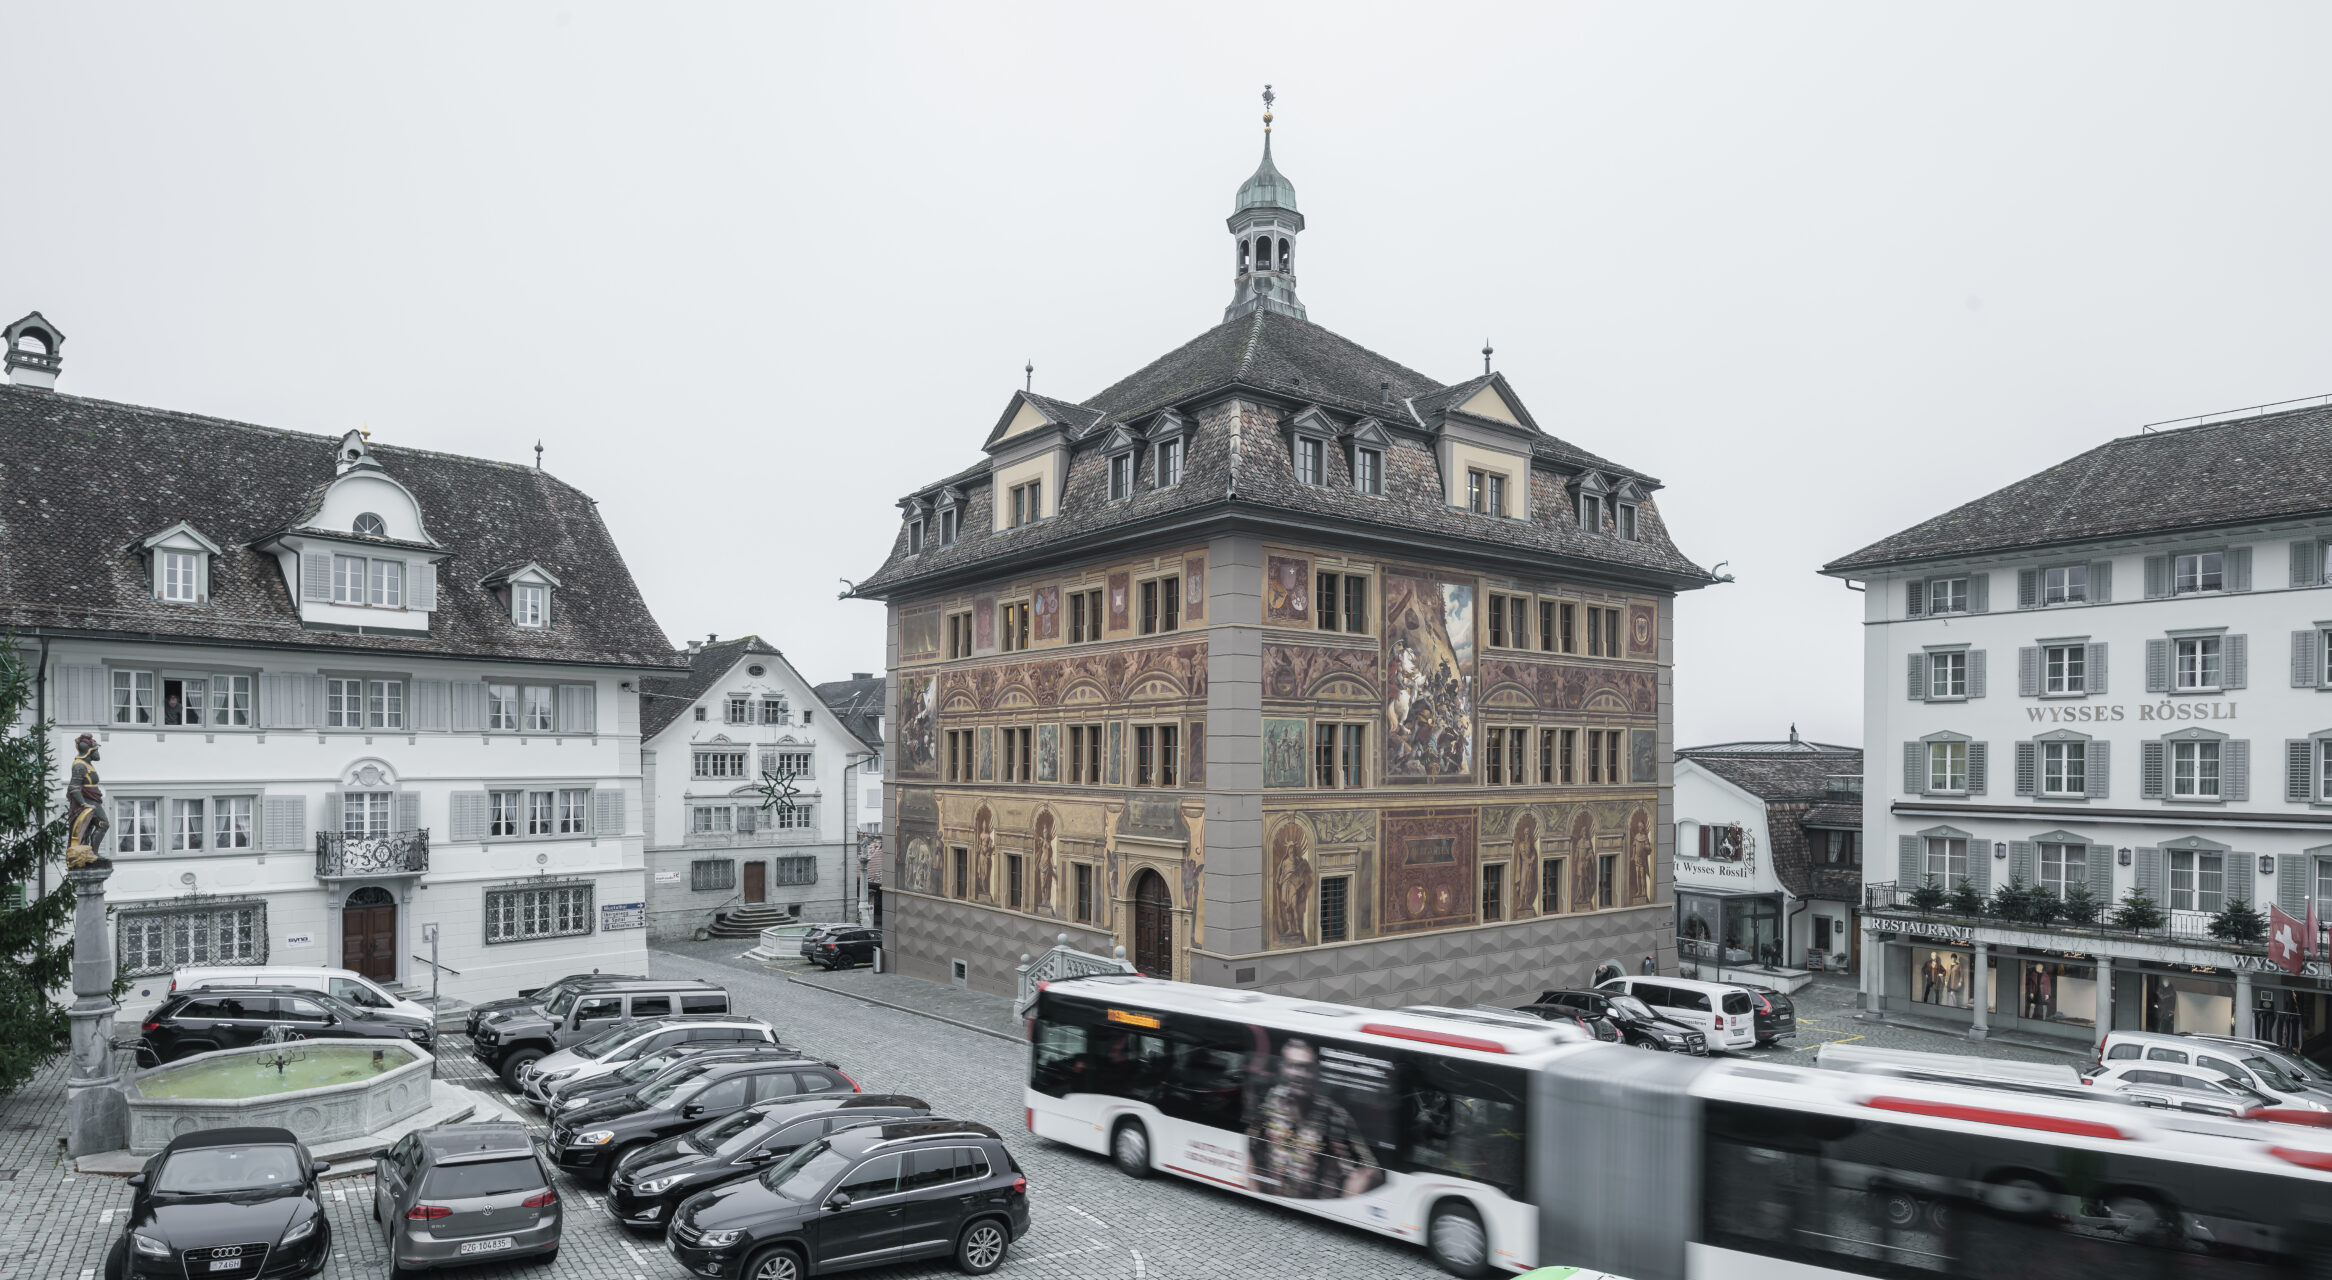 Rathaus Schwyz, Aussenaufnahme, marty architektur